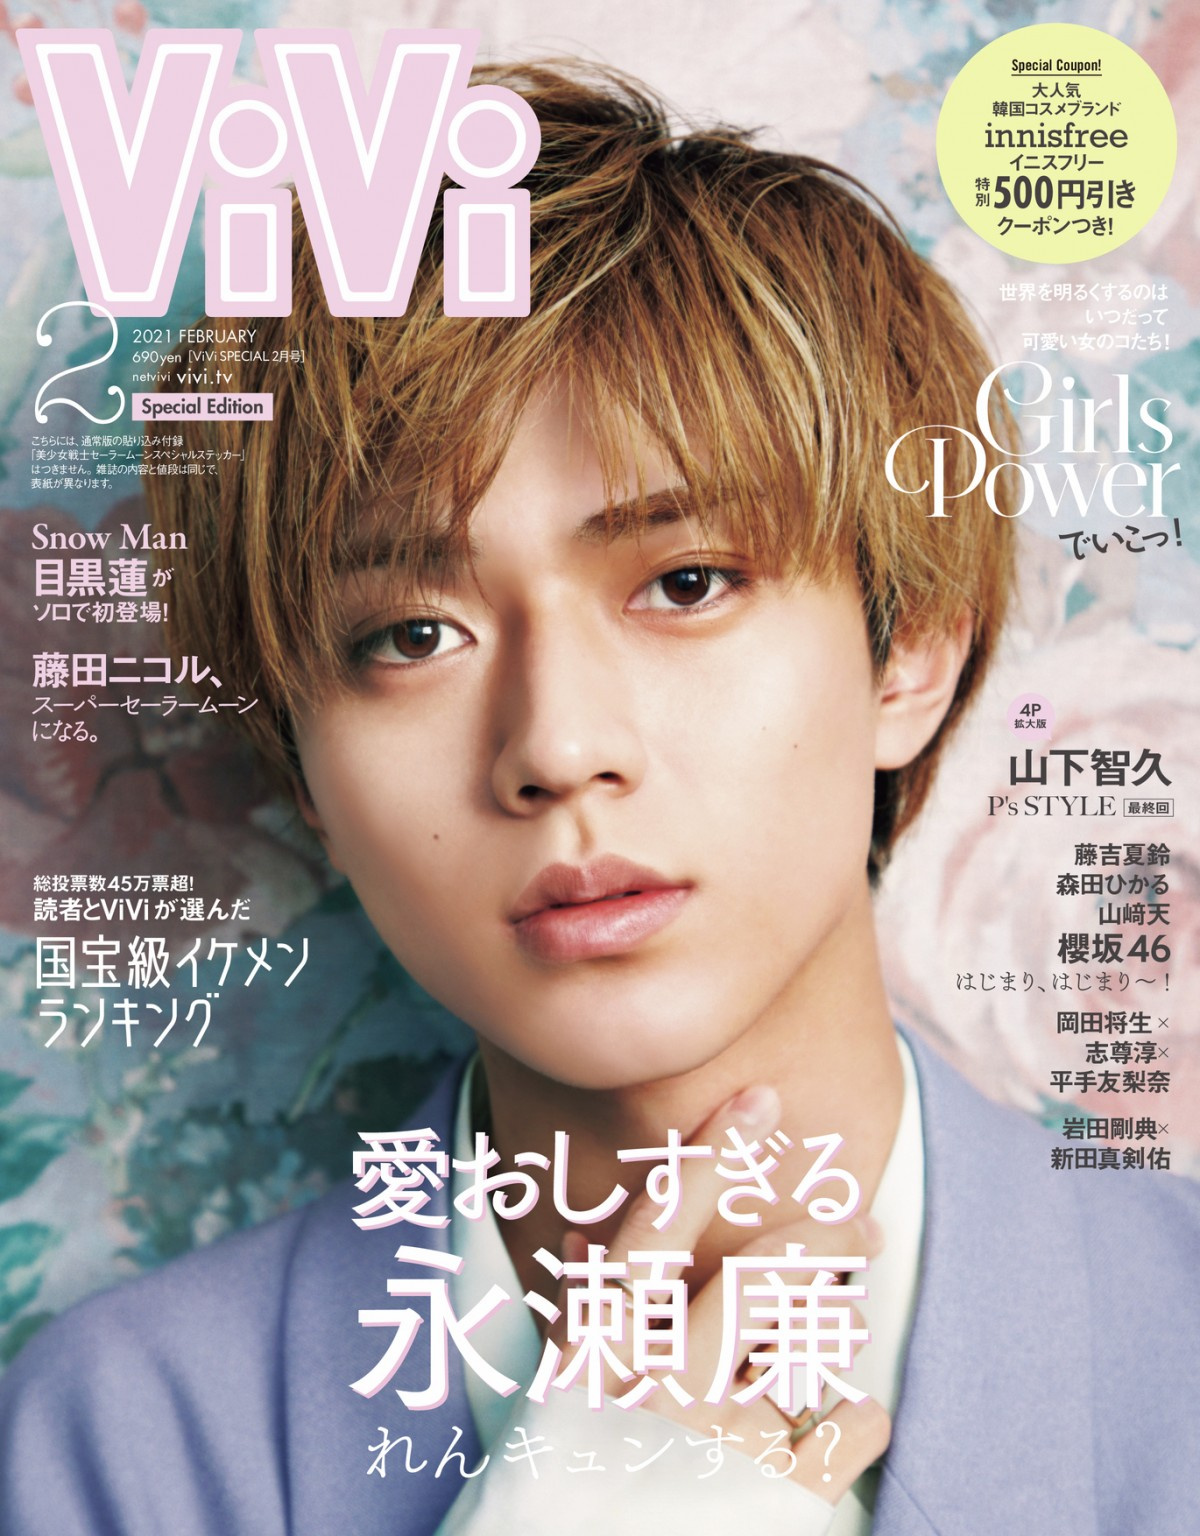 永瀬廉 国宝級イケメン 圧倒的強さで連覇 殿堂入り記念で Vivi 特別版表紙に緊急登場 Oricon News